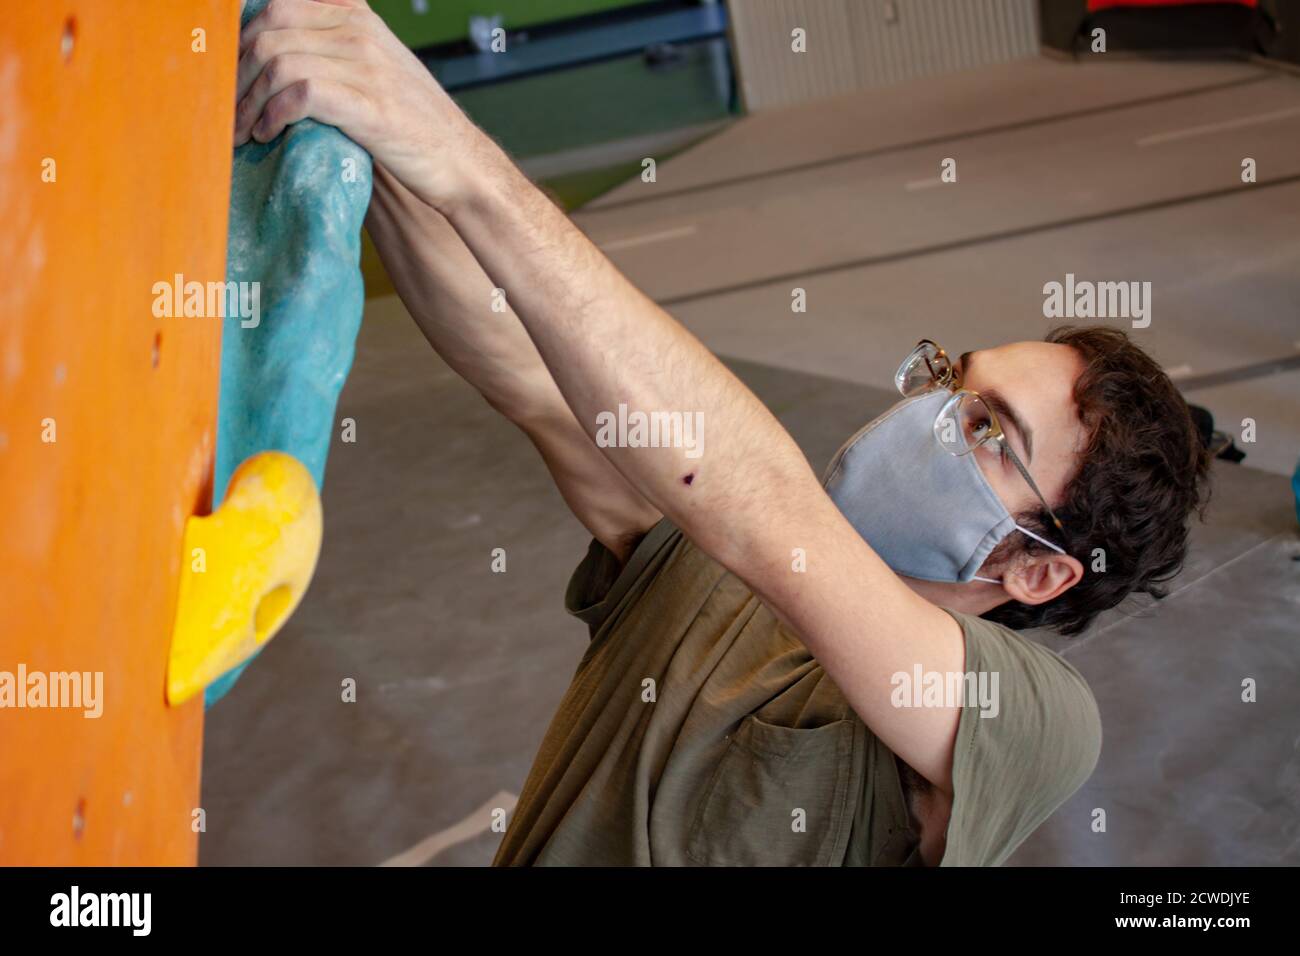 Nahaufnahme eines Mannes, der eine COVID-19 Pandemie trägt Mask klettert eine Boulderwand in einer Kletterhalle nach Richtlinien zur sozialen Distanz für Bewegung Stockfoto